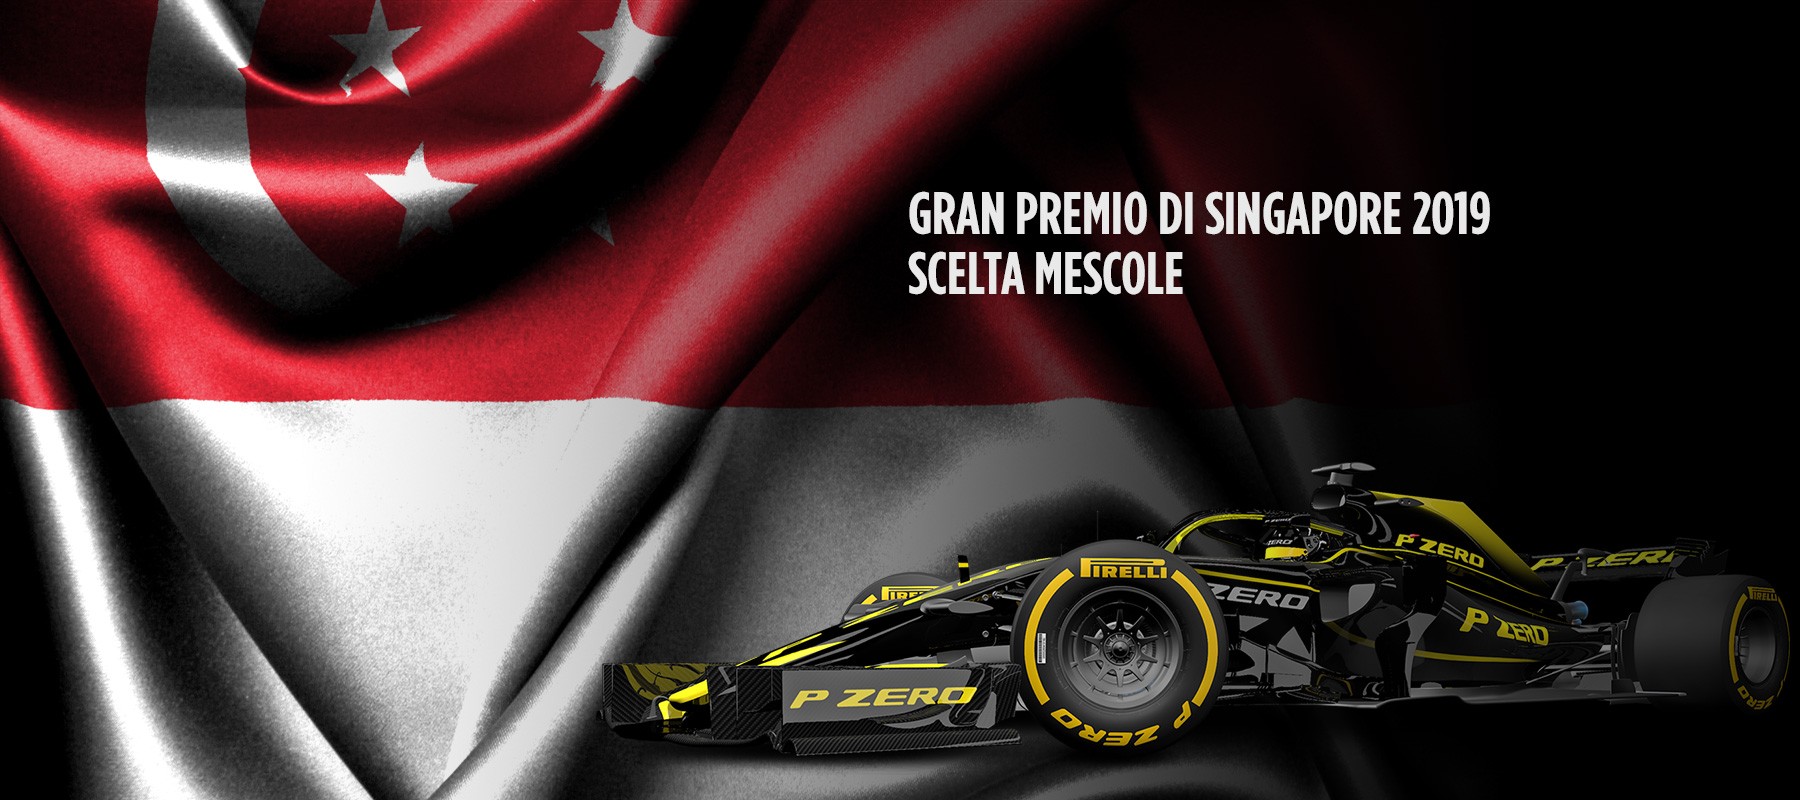 Pirelli ha nominato le seguenti mescole per il Gran Premio di Singapor